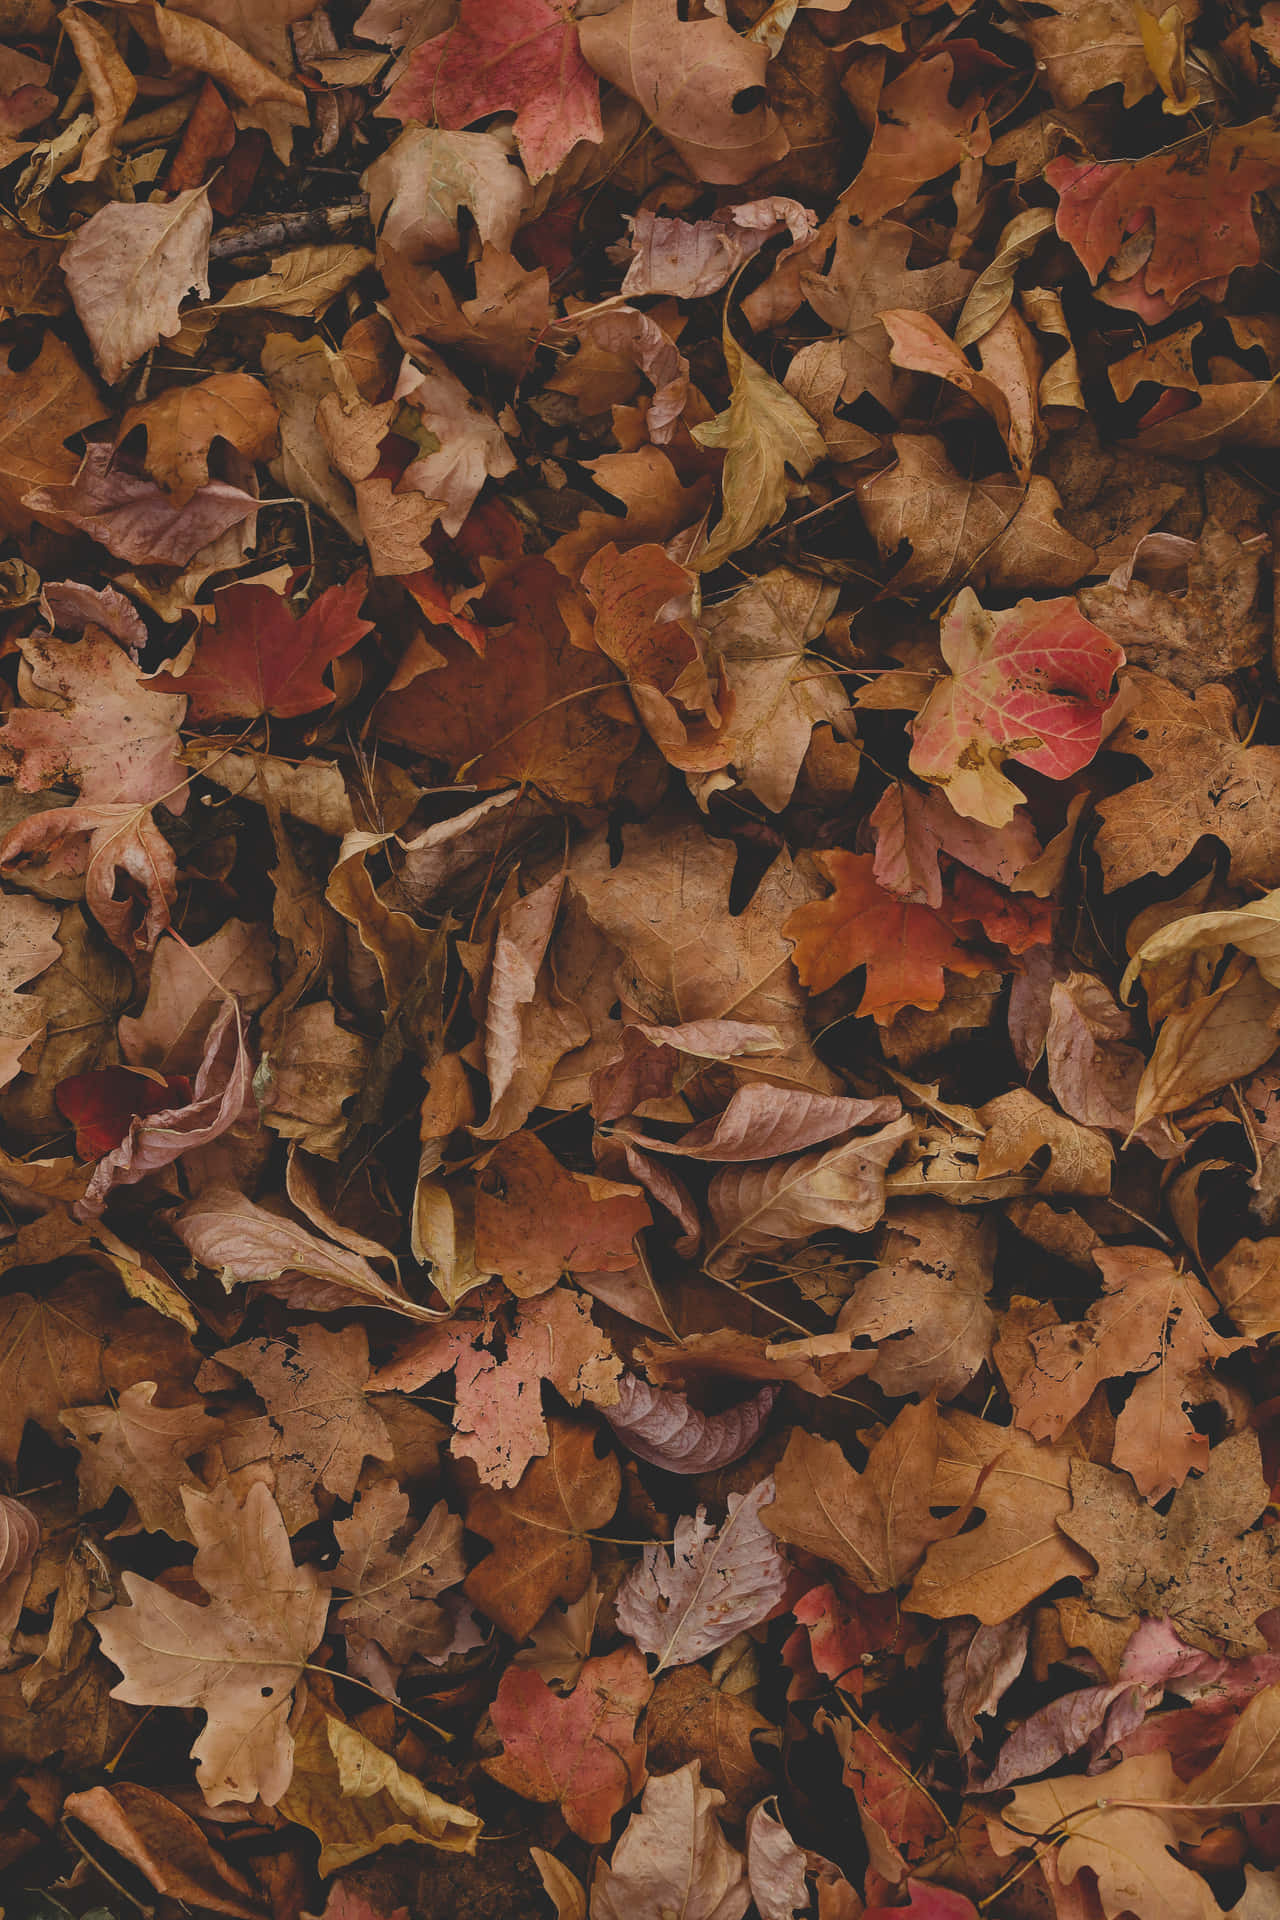 Unabrillante Foglia D'autunno Si Appende A Un Ramo In Mezzo A Un Paesaggio Autunnale Dorato.